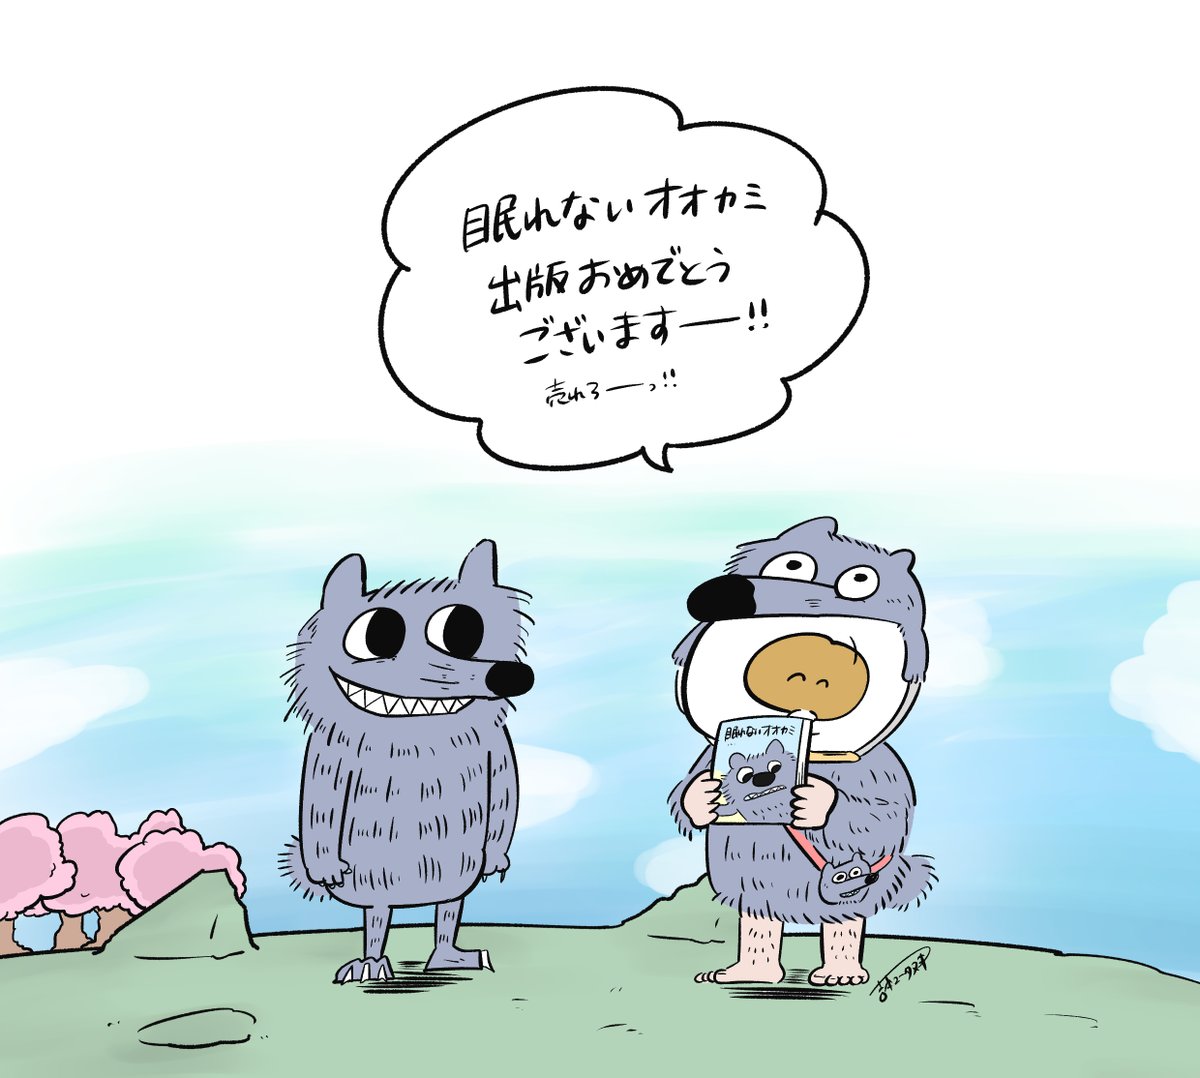 したらさん(@shitara_ryo  )の『眠れないオオカミ』出版嬉しい!ツイッターで読んでたけど、絵本みたいでかわいいから紙でも観たくて買った〜(早く届け〜)! 